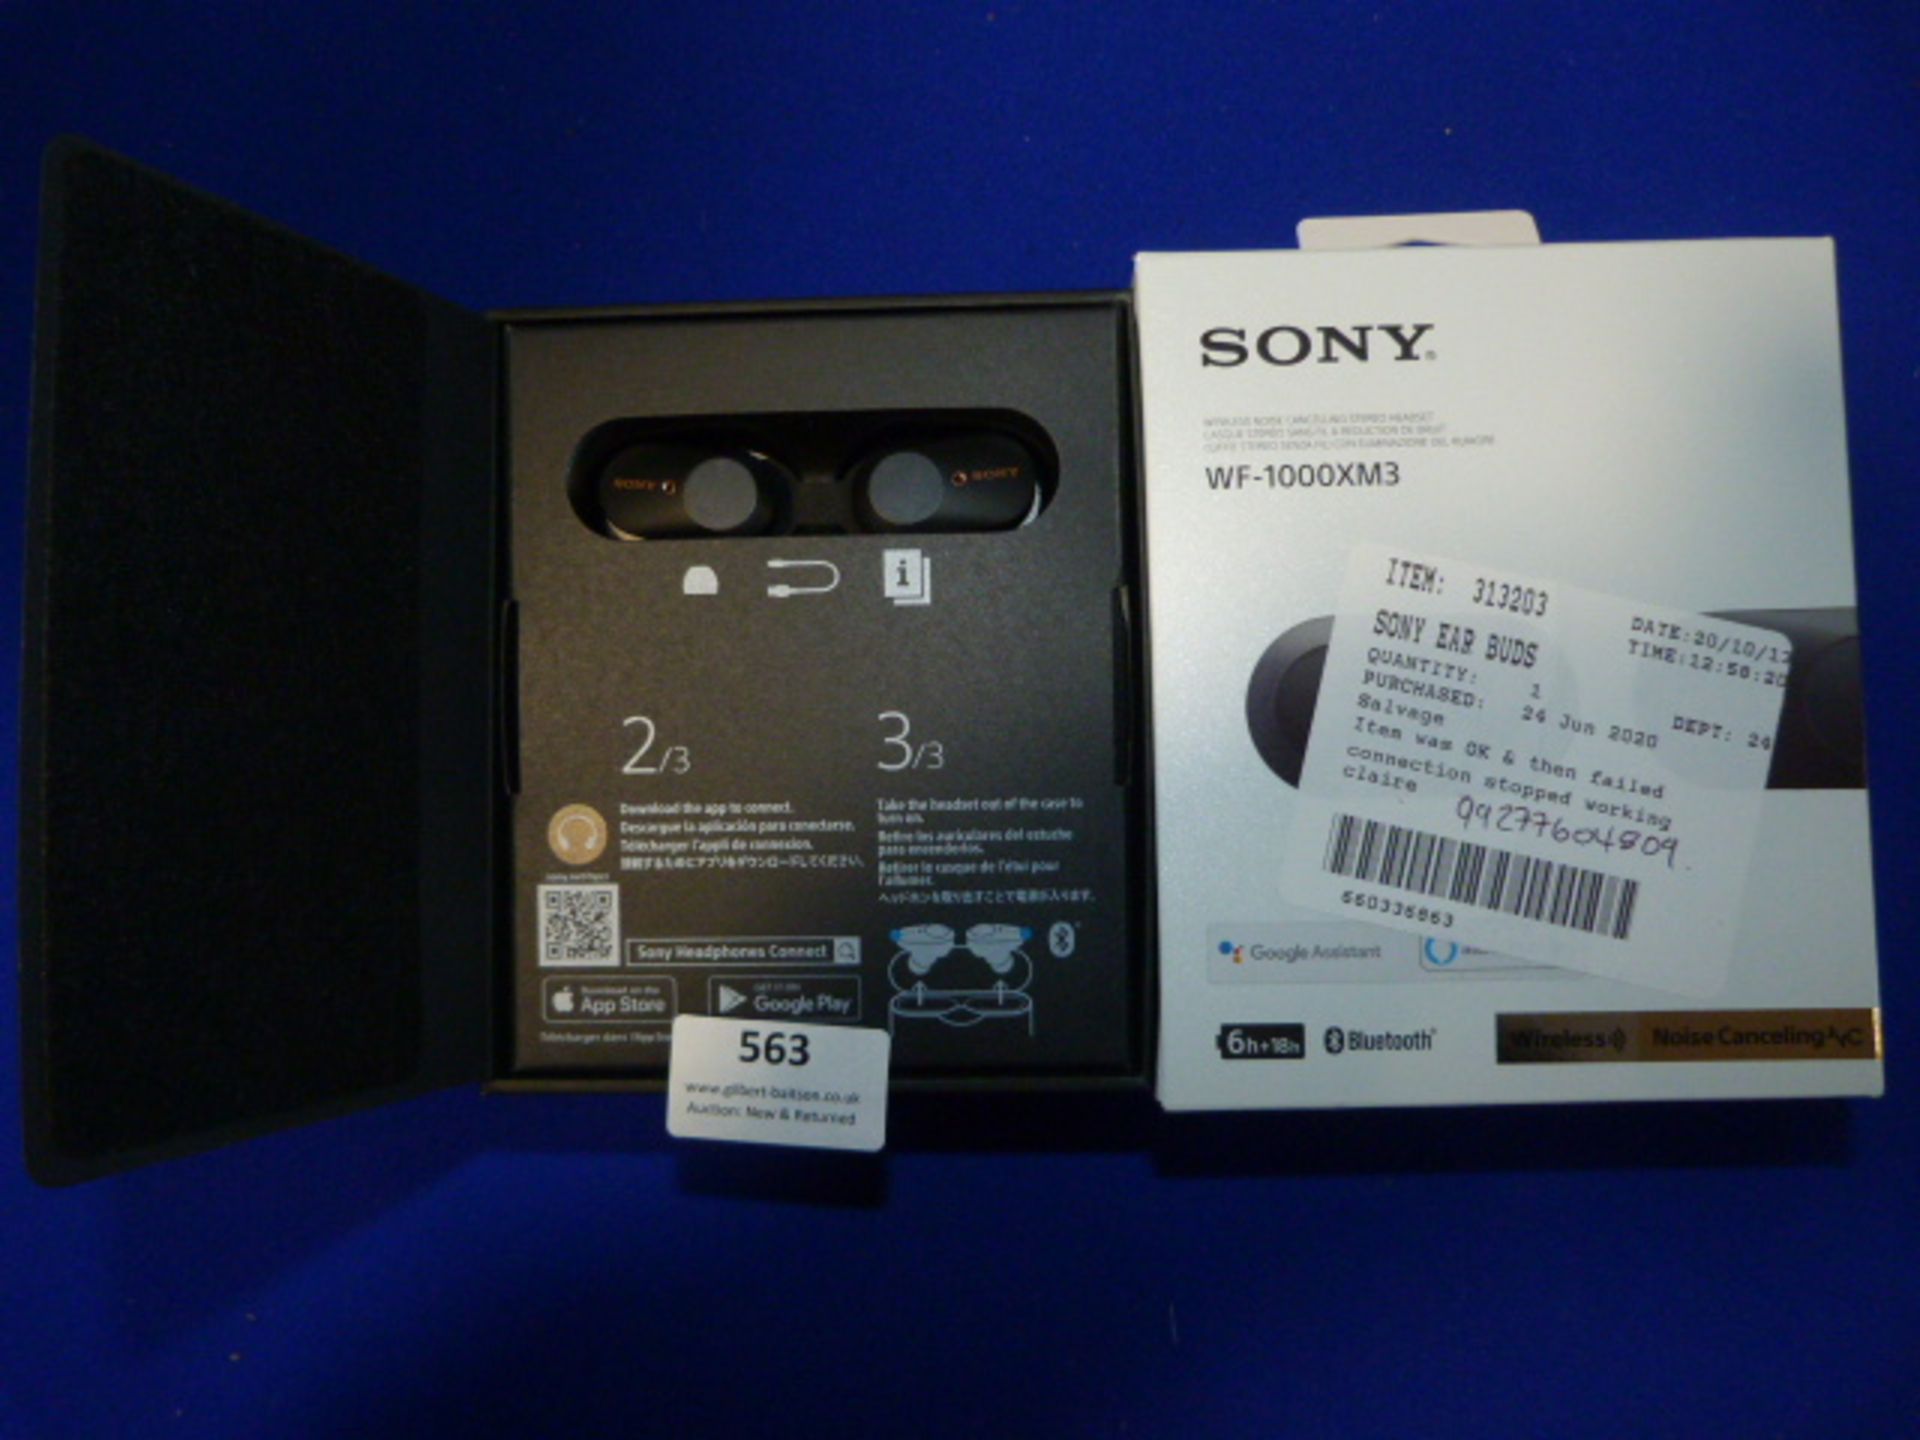 *Sony Earbuds WF-1000XM3